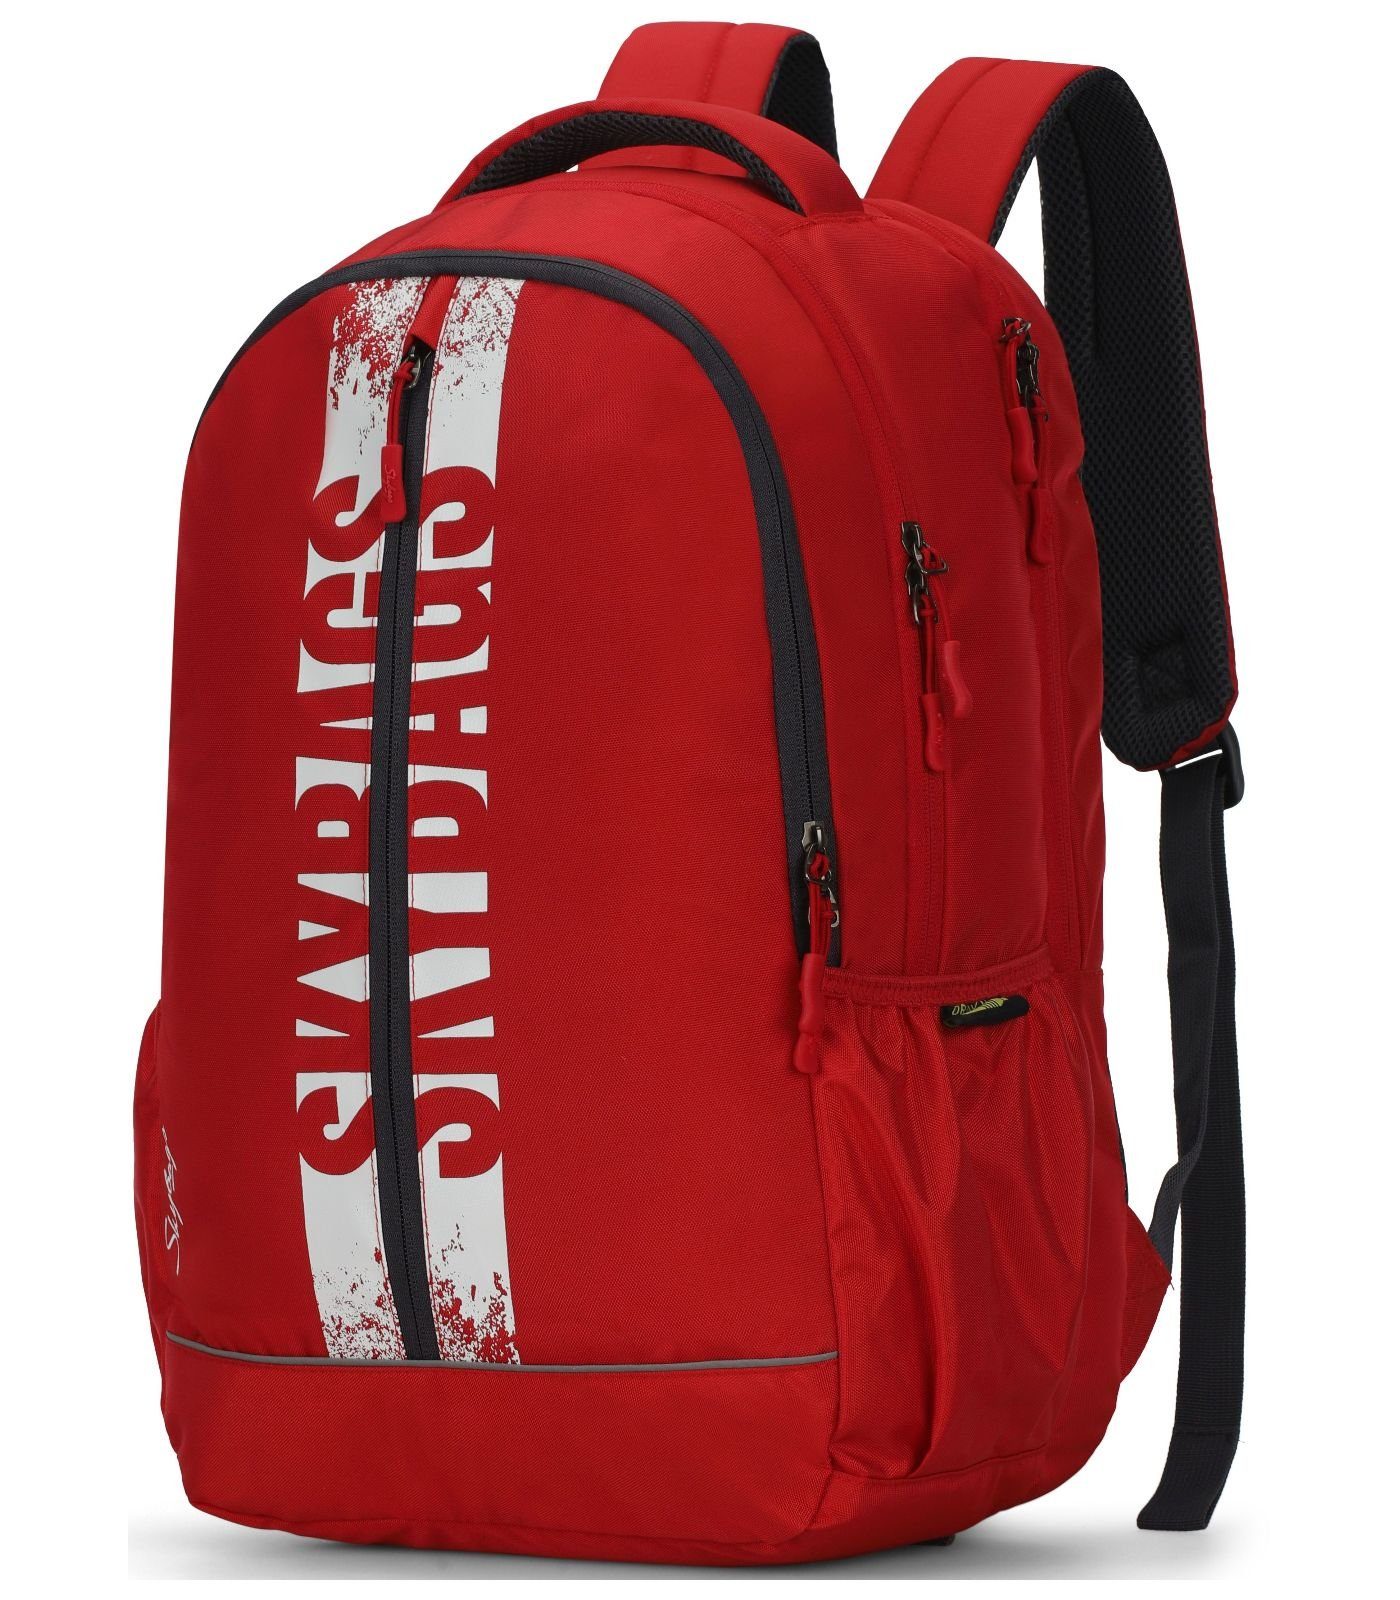 Textil Skybags Rucksack Taschen